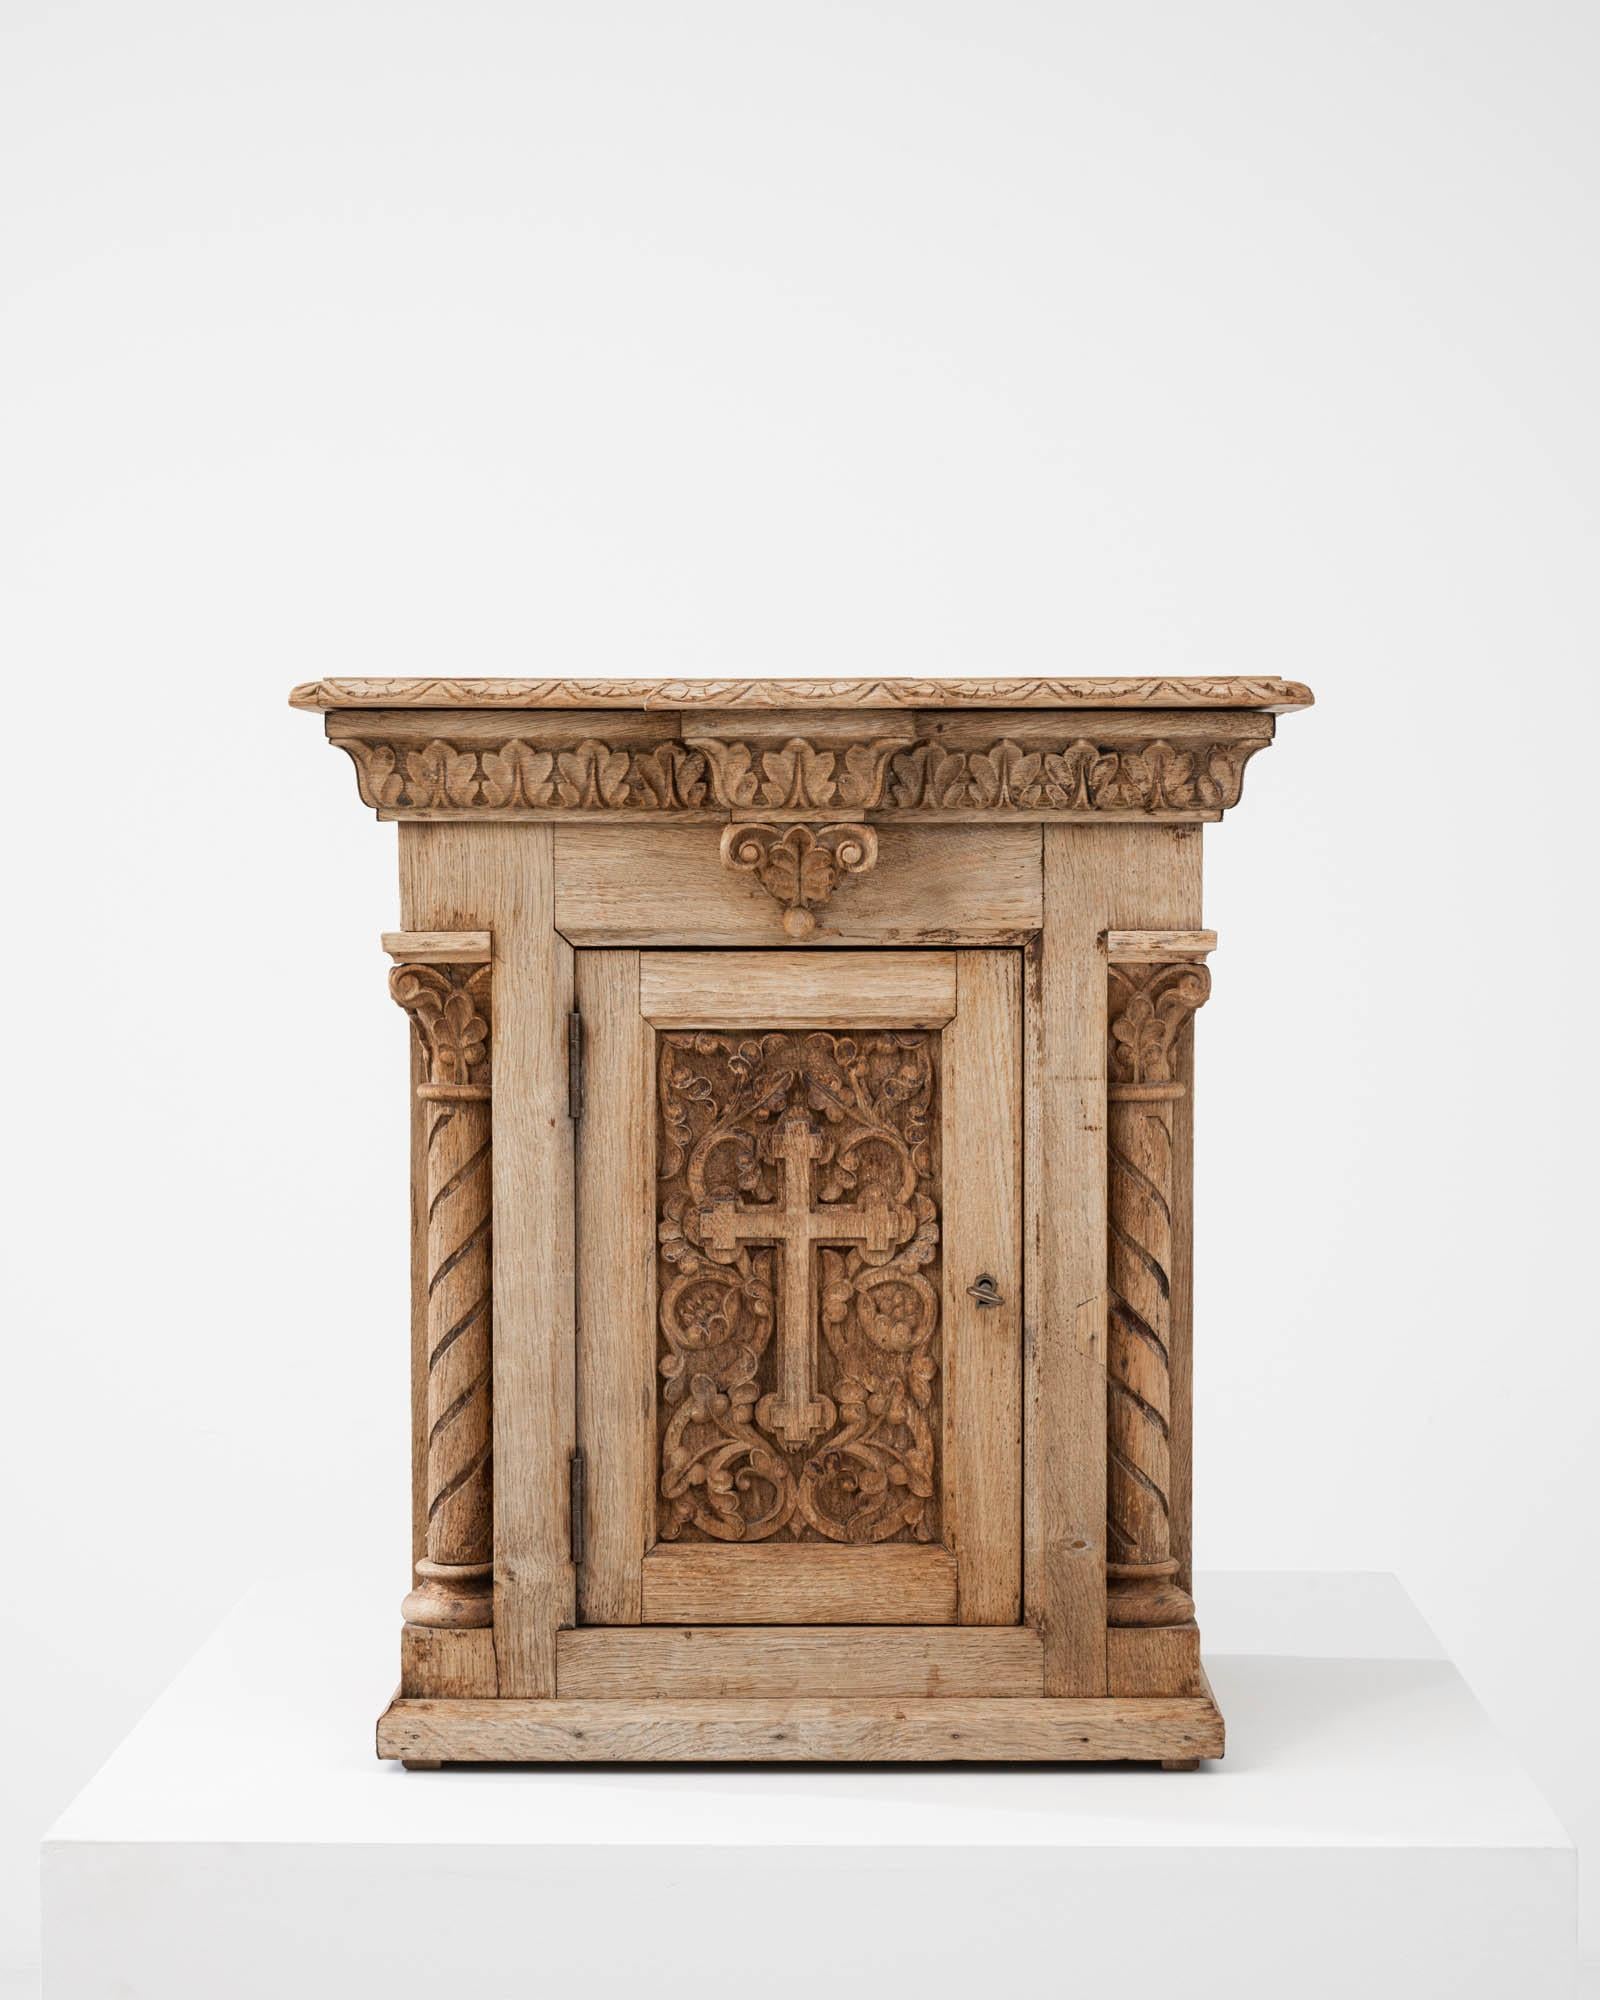 Voici la boîte en chêne blanchi belge du XIXe siècle, un témoignage de la beauté durable de l'artisanat antique. Cette pièce exquise porte en elle le poids de l'histoire, chaque détail méticuleusement sculpté racontant l'histoire d'époques révolues.